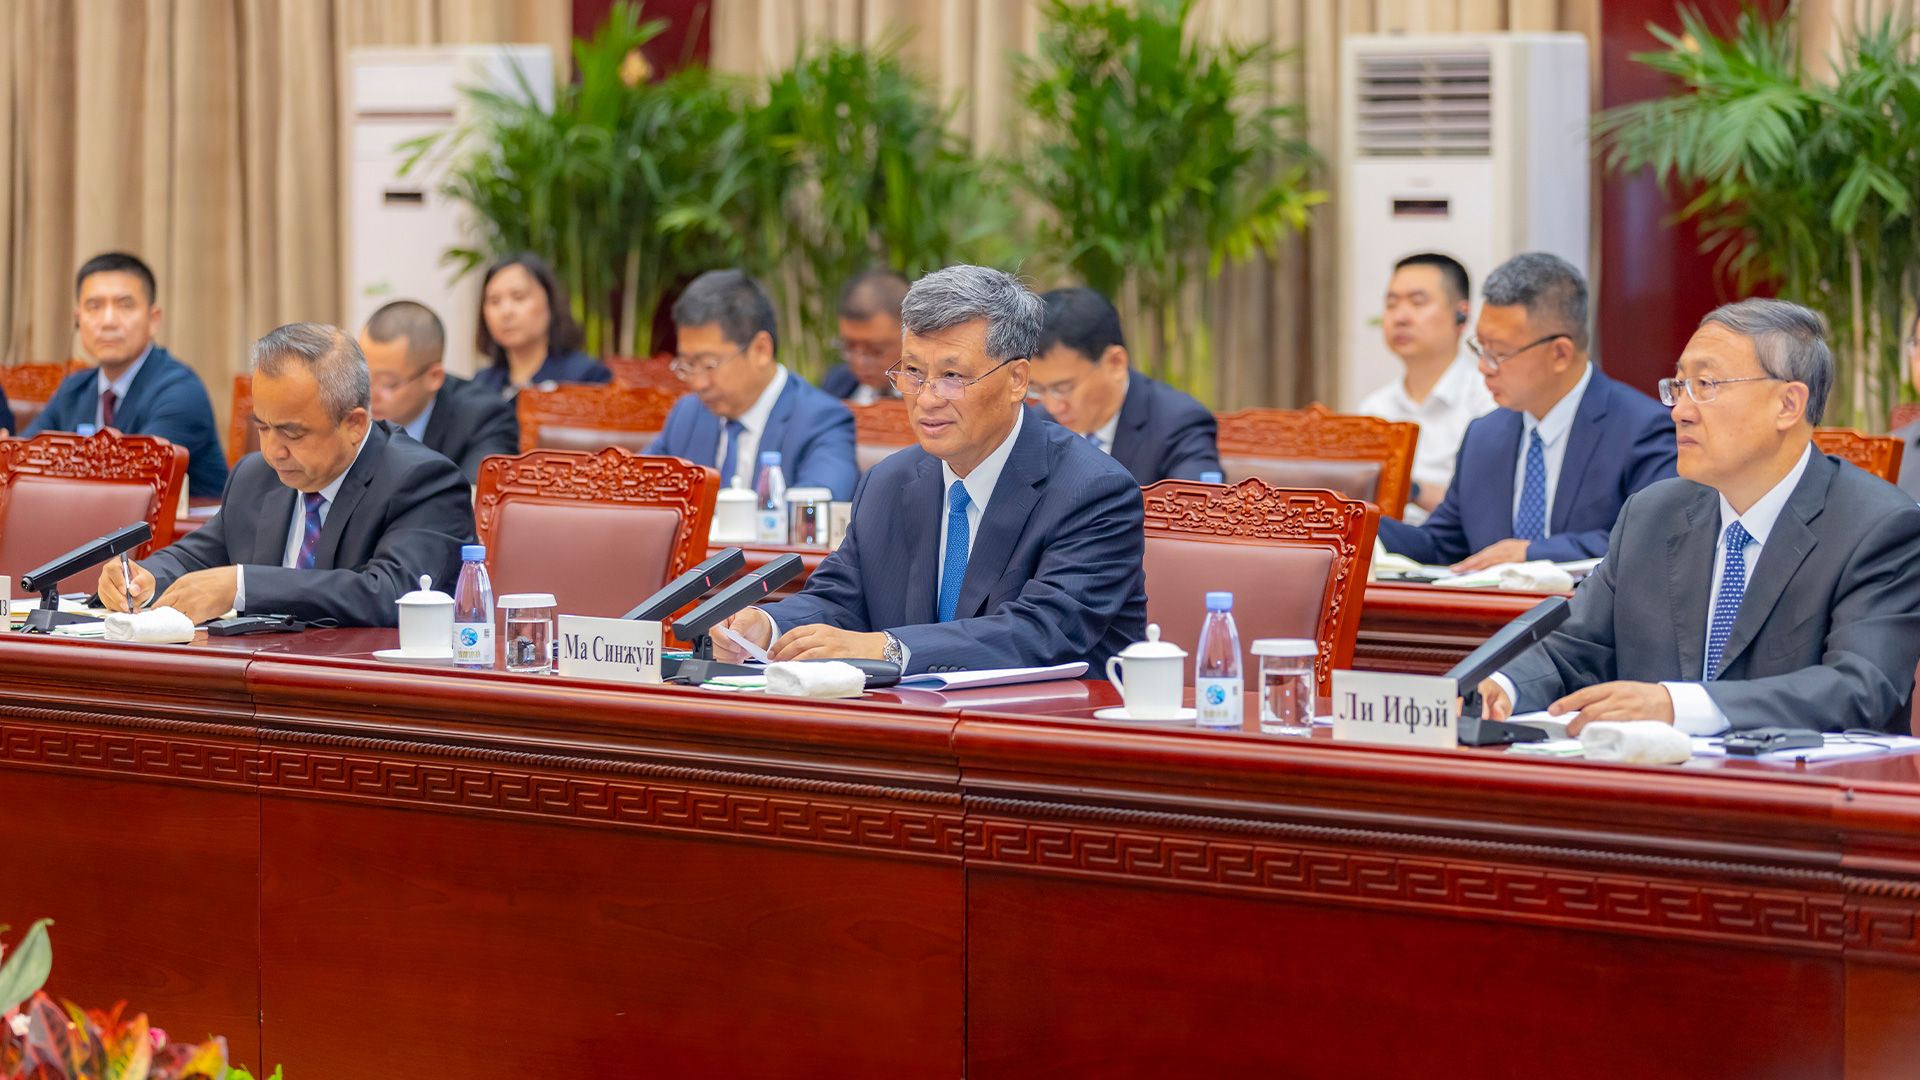 СУАР КНР предлагает Казахстану сотрудничество с крупными предприятиями Гонконга и Макао 3116104 — Kapital.kz 